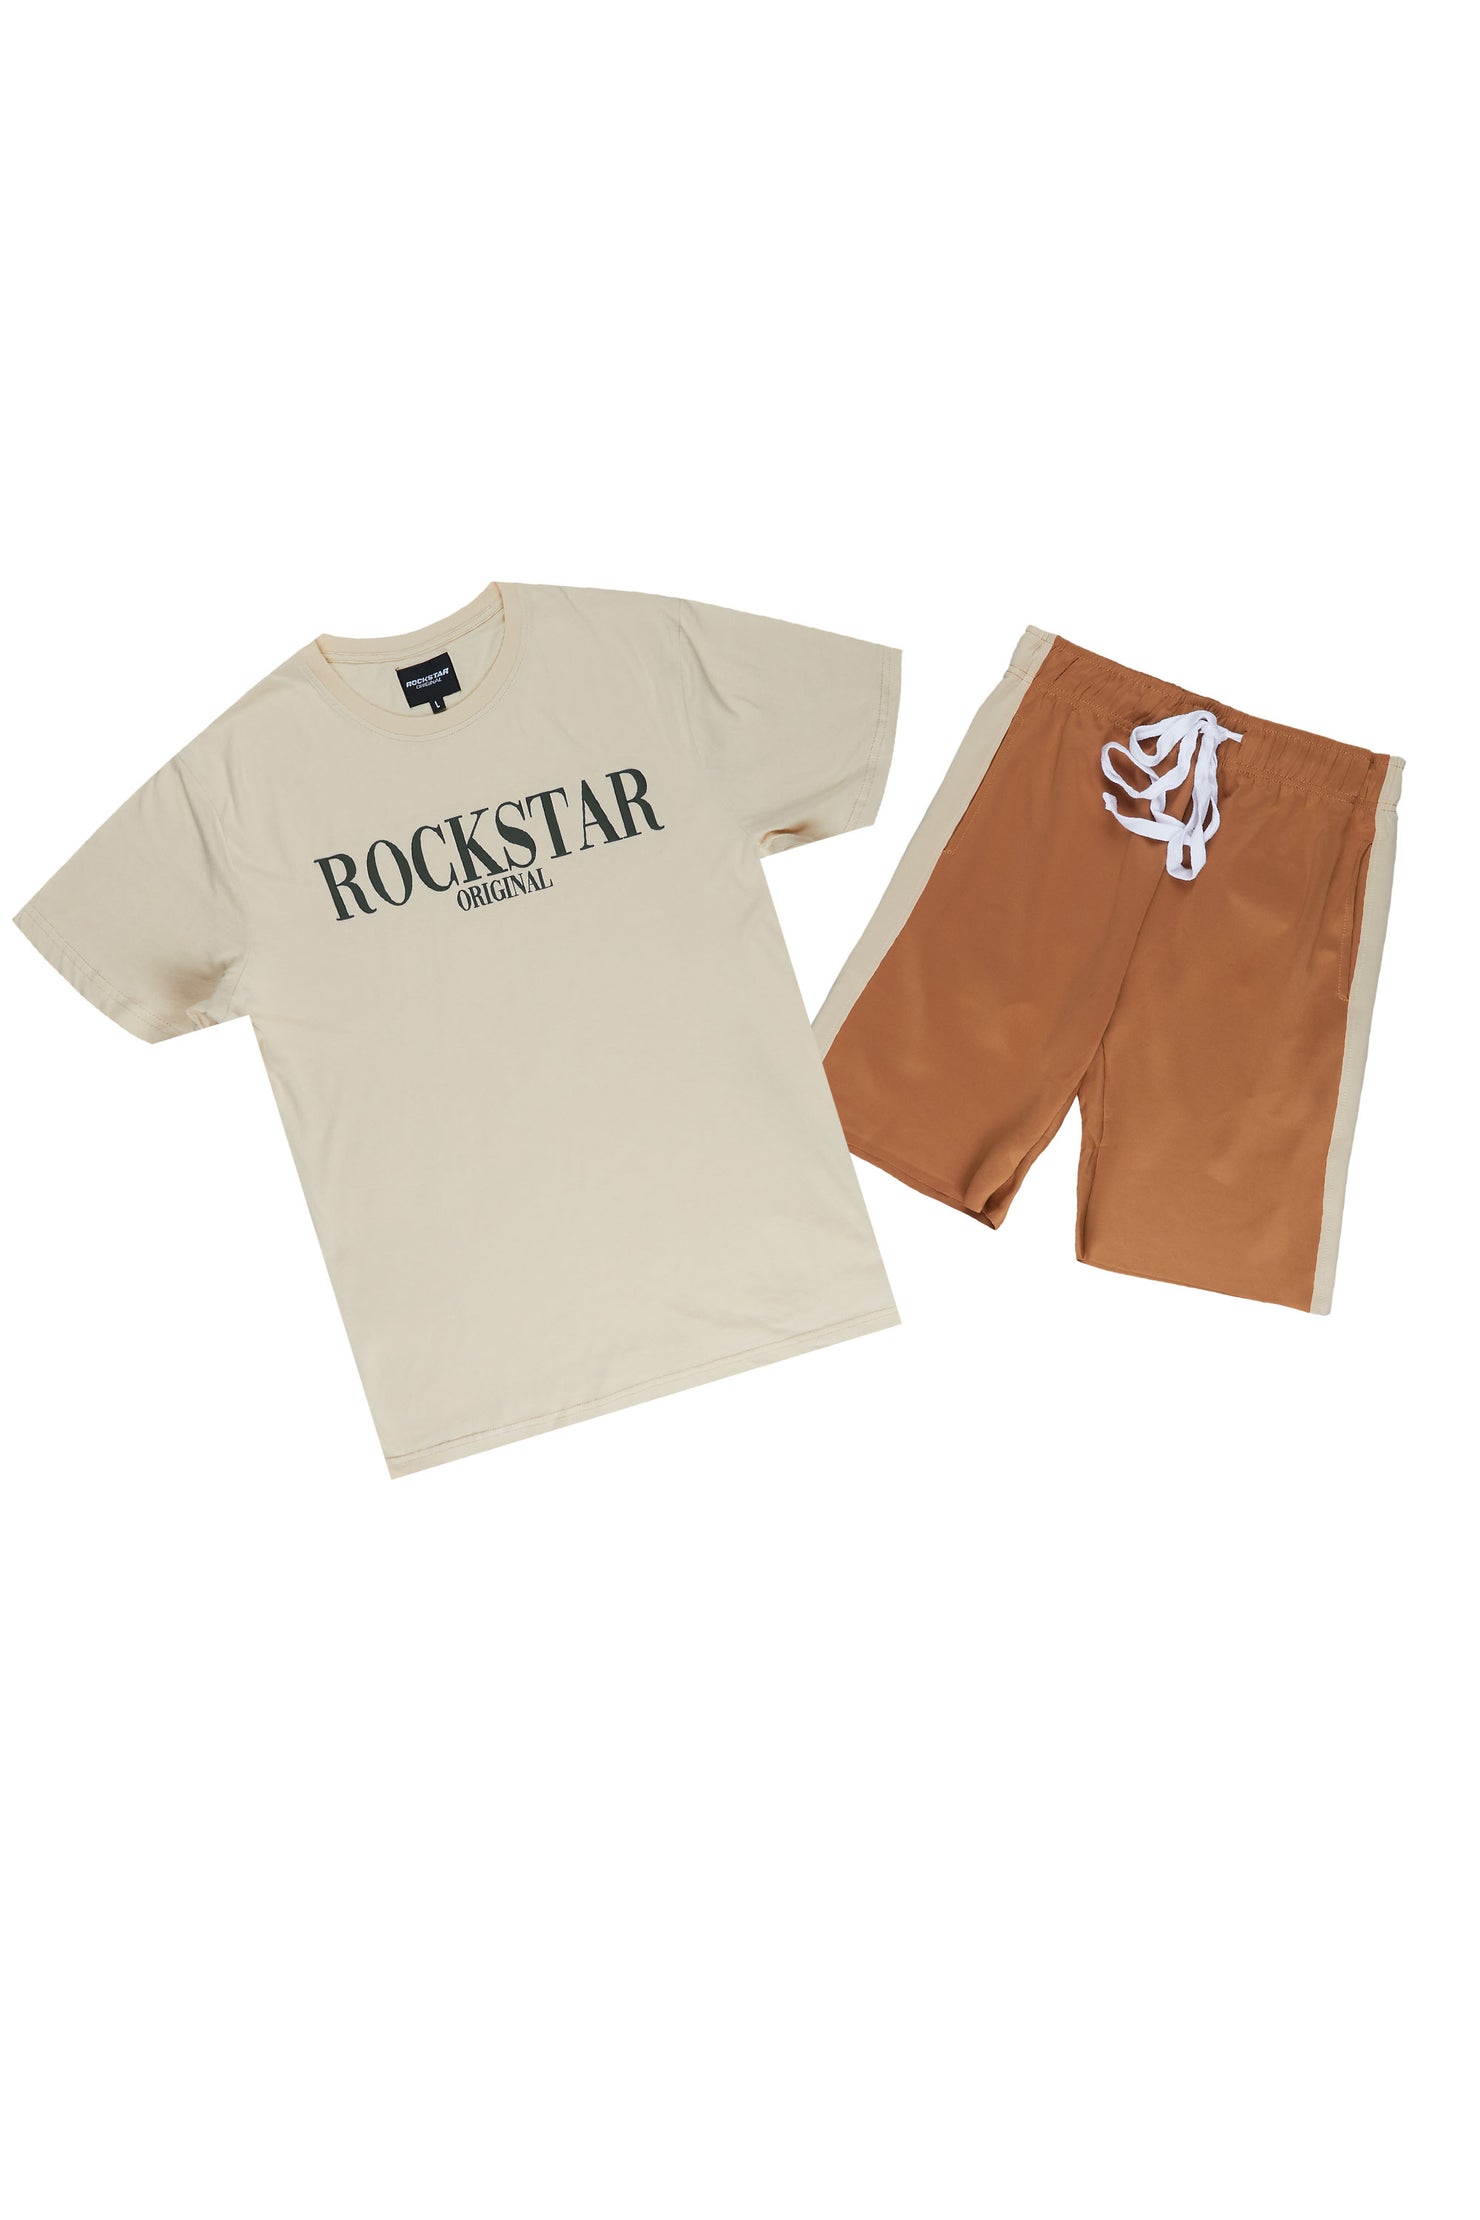 Octavio Beige/Green Basic T-Shirt Short Set